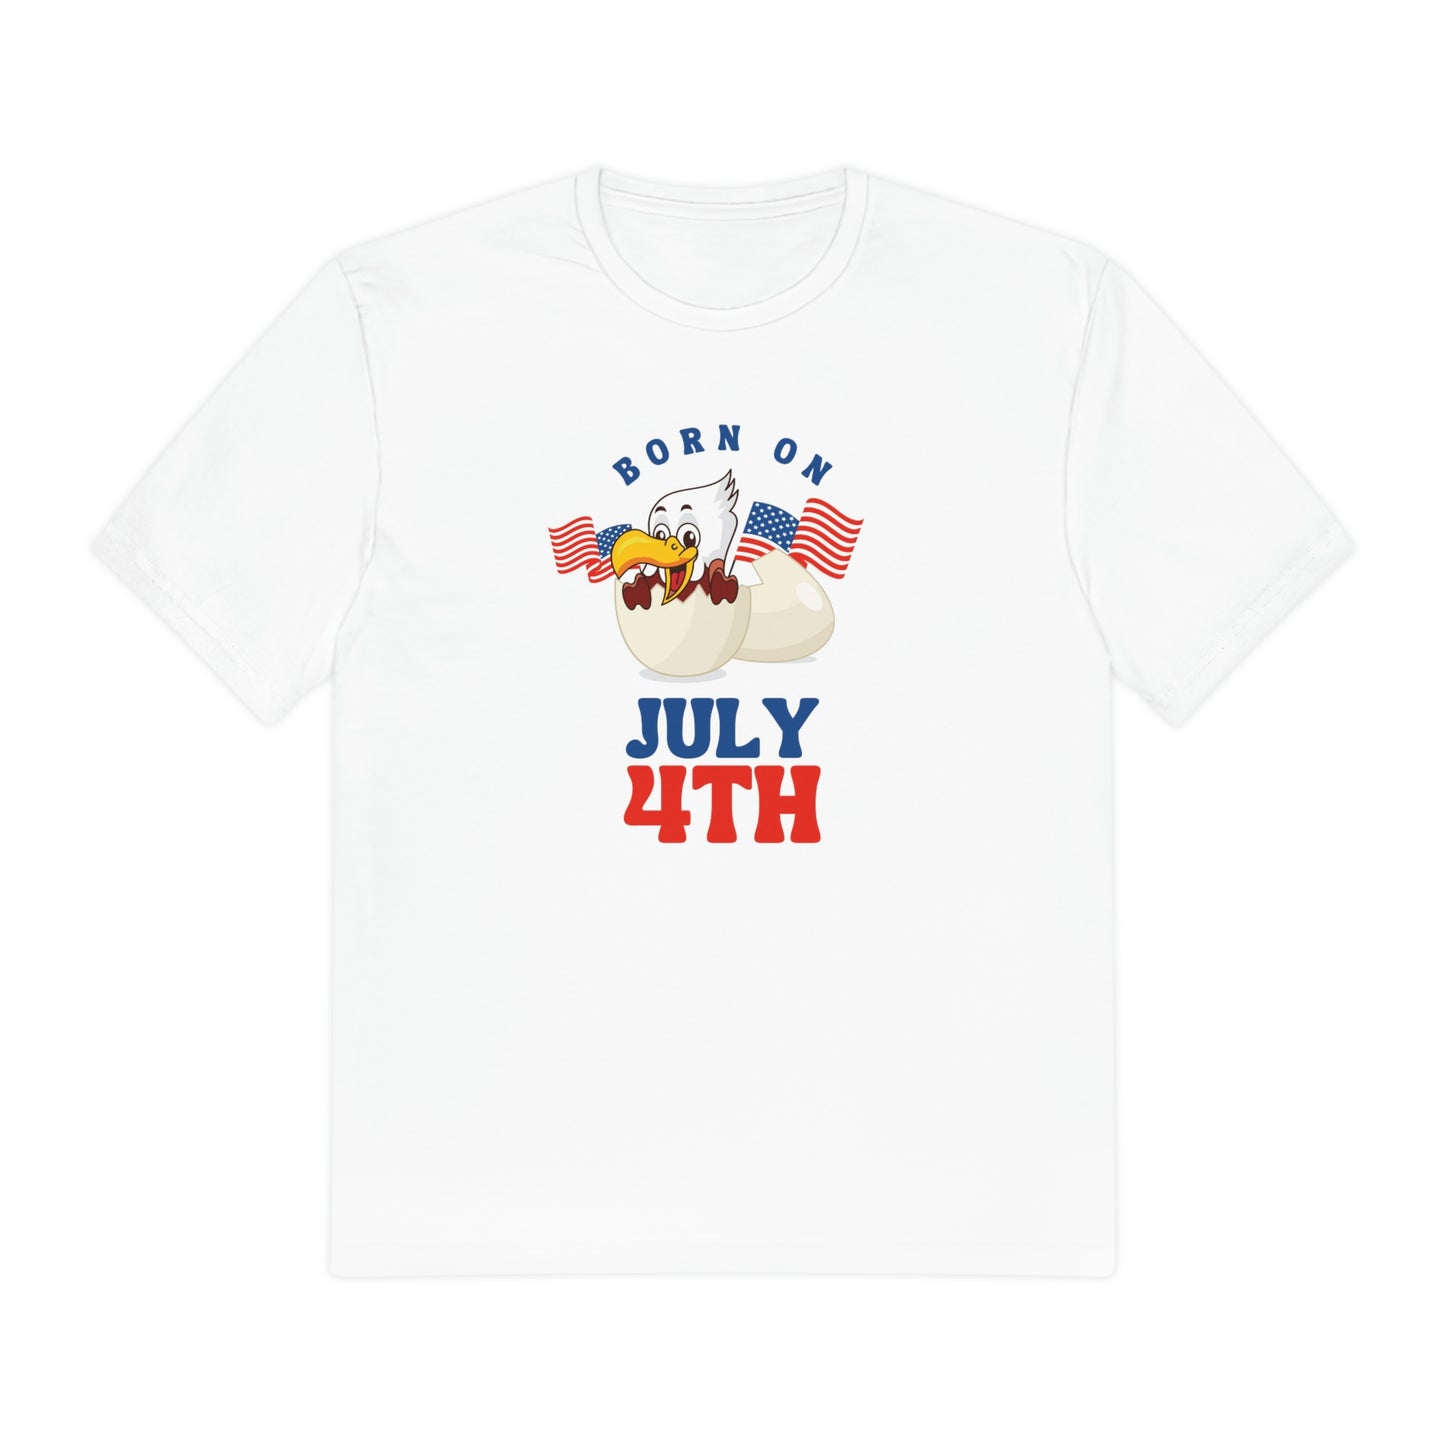 Born on 4th of July, USA Flag Shirt, 4th of July Shirt, Big USA T-shirt, USA Comfort Colors Shirt, Comfort Colors USA Flag Tee, USA Comfort Colors Tee, USA Shirt